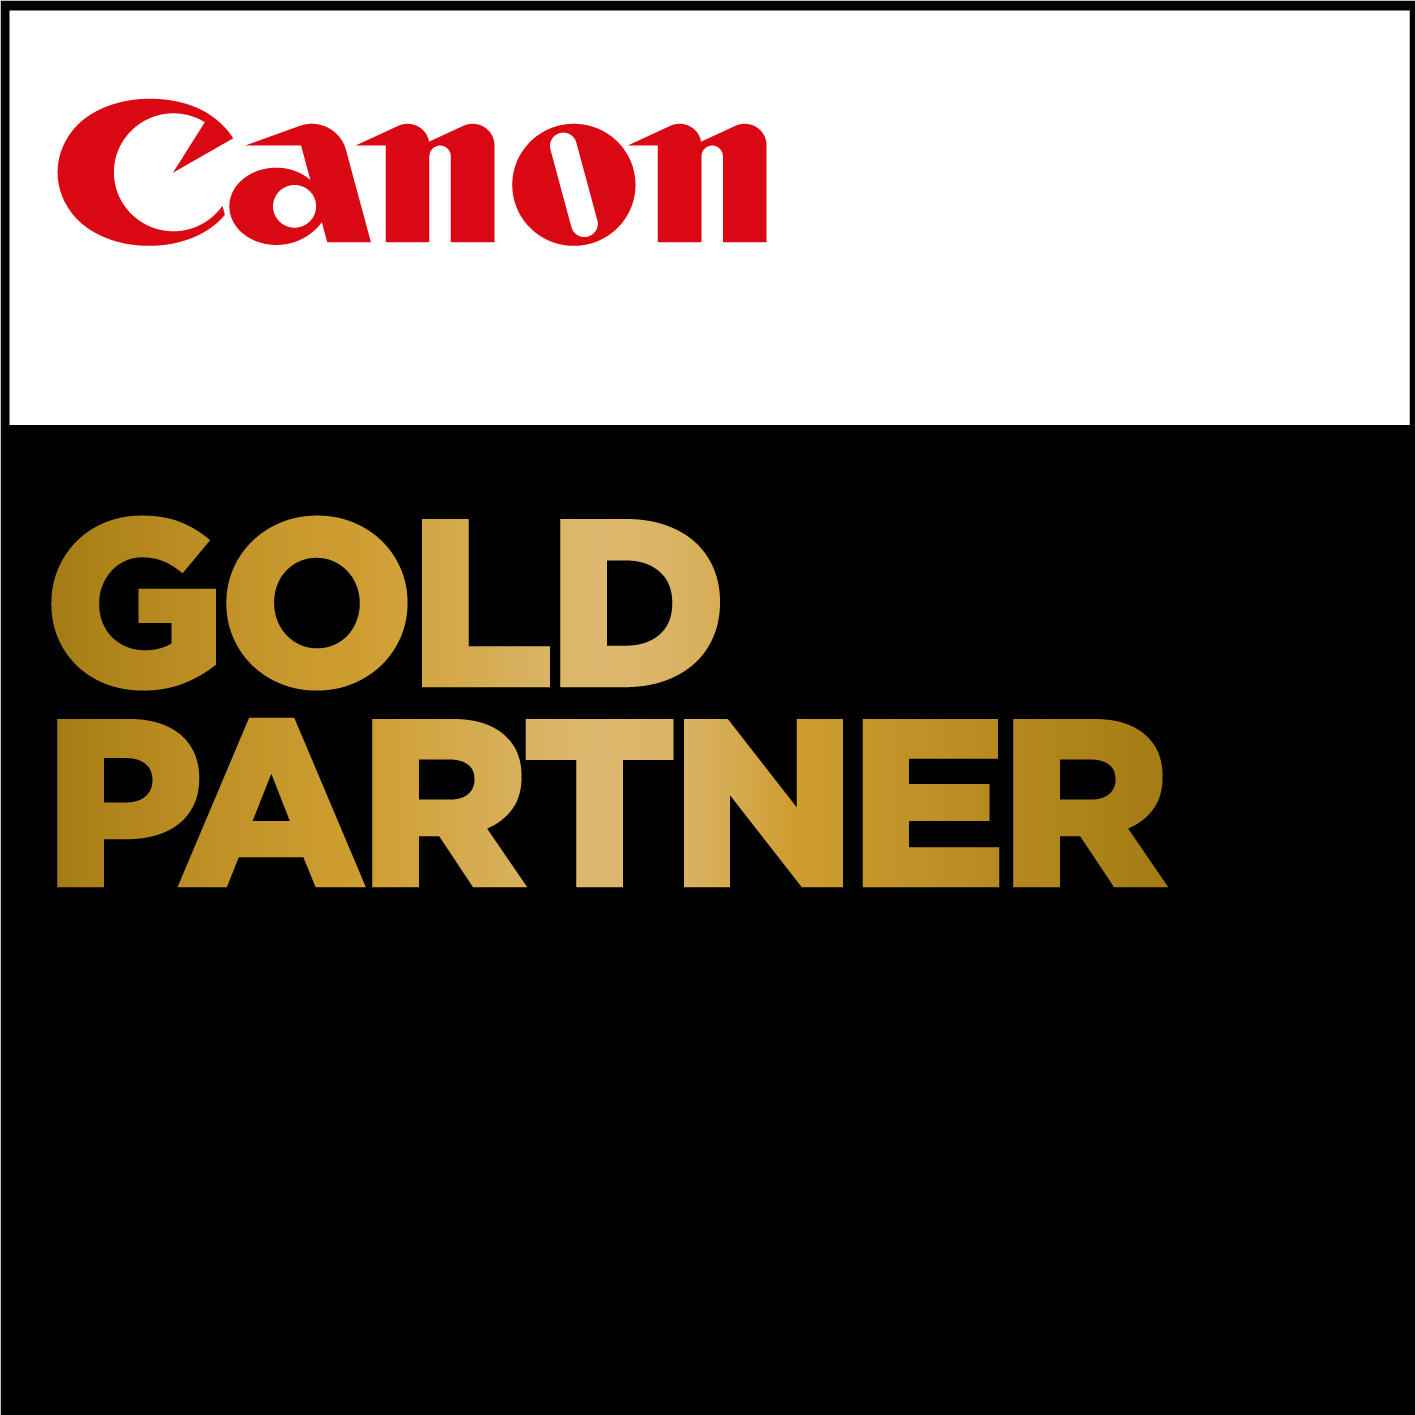 Canon_PP-GoldPartner_CMYK